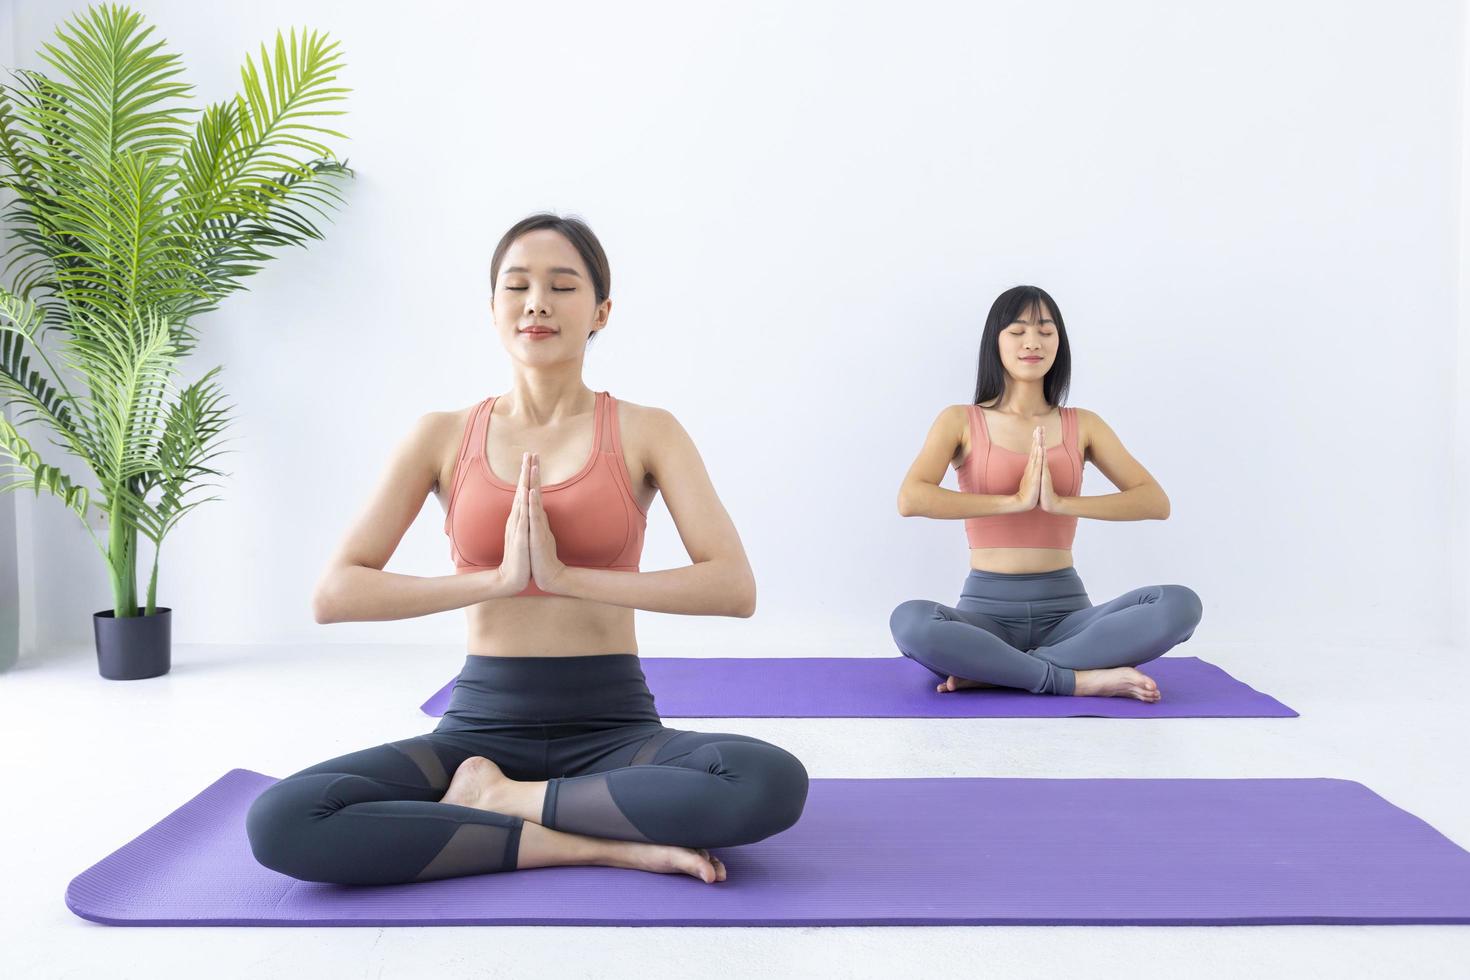 mujer asiática practicando yoga en interiores con una posición fácil y sencilla para controlar la inhalación y exhalación en pose de meditación foto